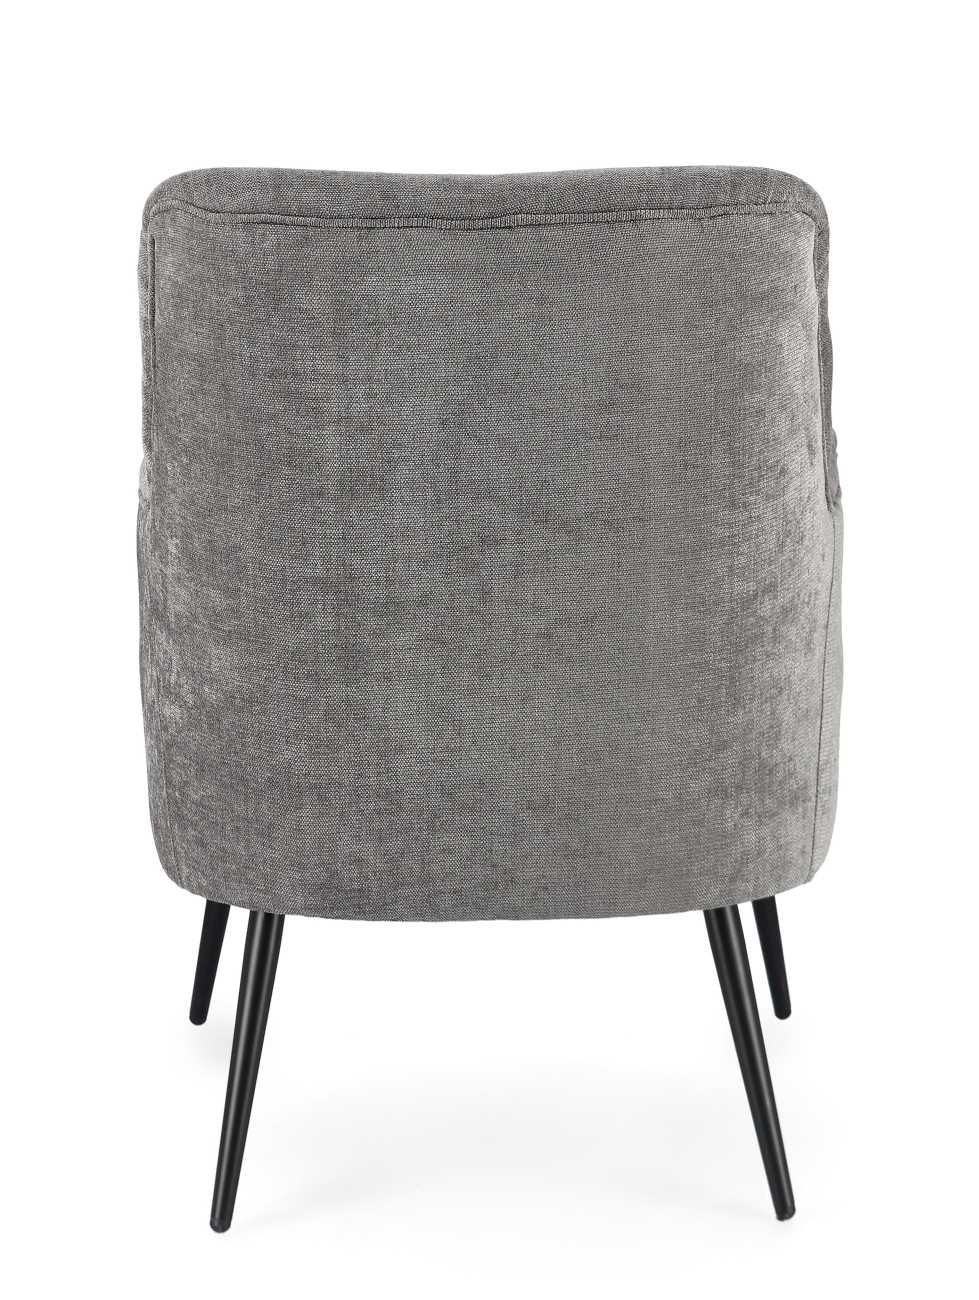 Der Sessel Ernestine überzeugt mit seinem modernen Stil. Gefertigt wurde er aus einem Stoff-Bezug, welcher einen grauen Farbton besitzt. Das Gestell ist aus Metall und hat eine schwarze Farbe. Der Sessel verfügt über eine Armlehne.